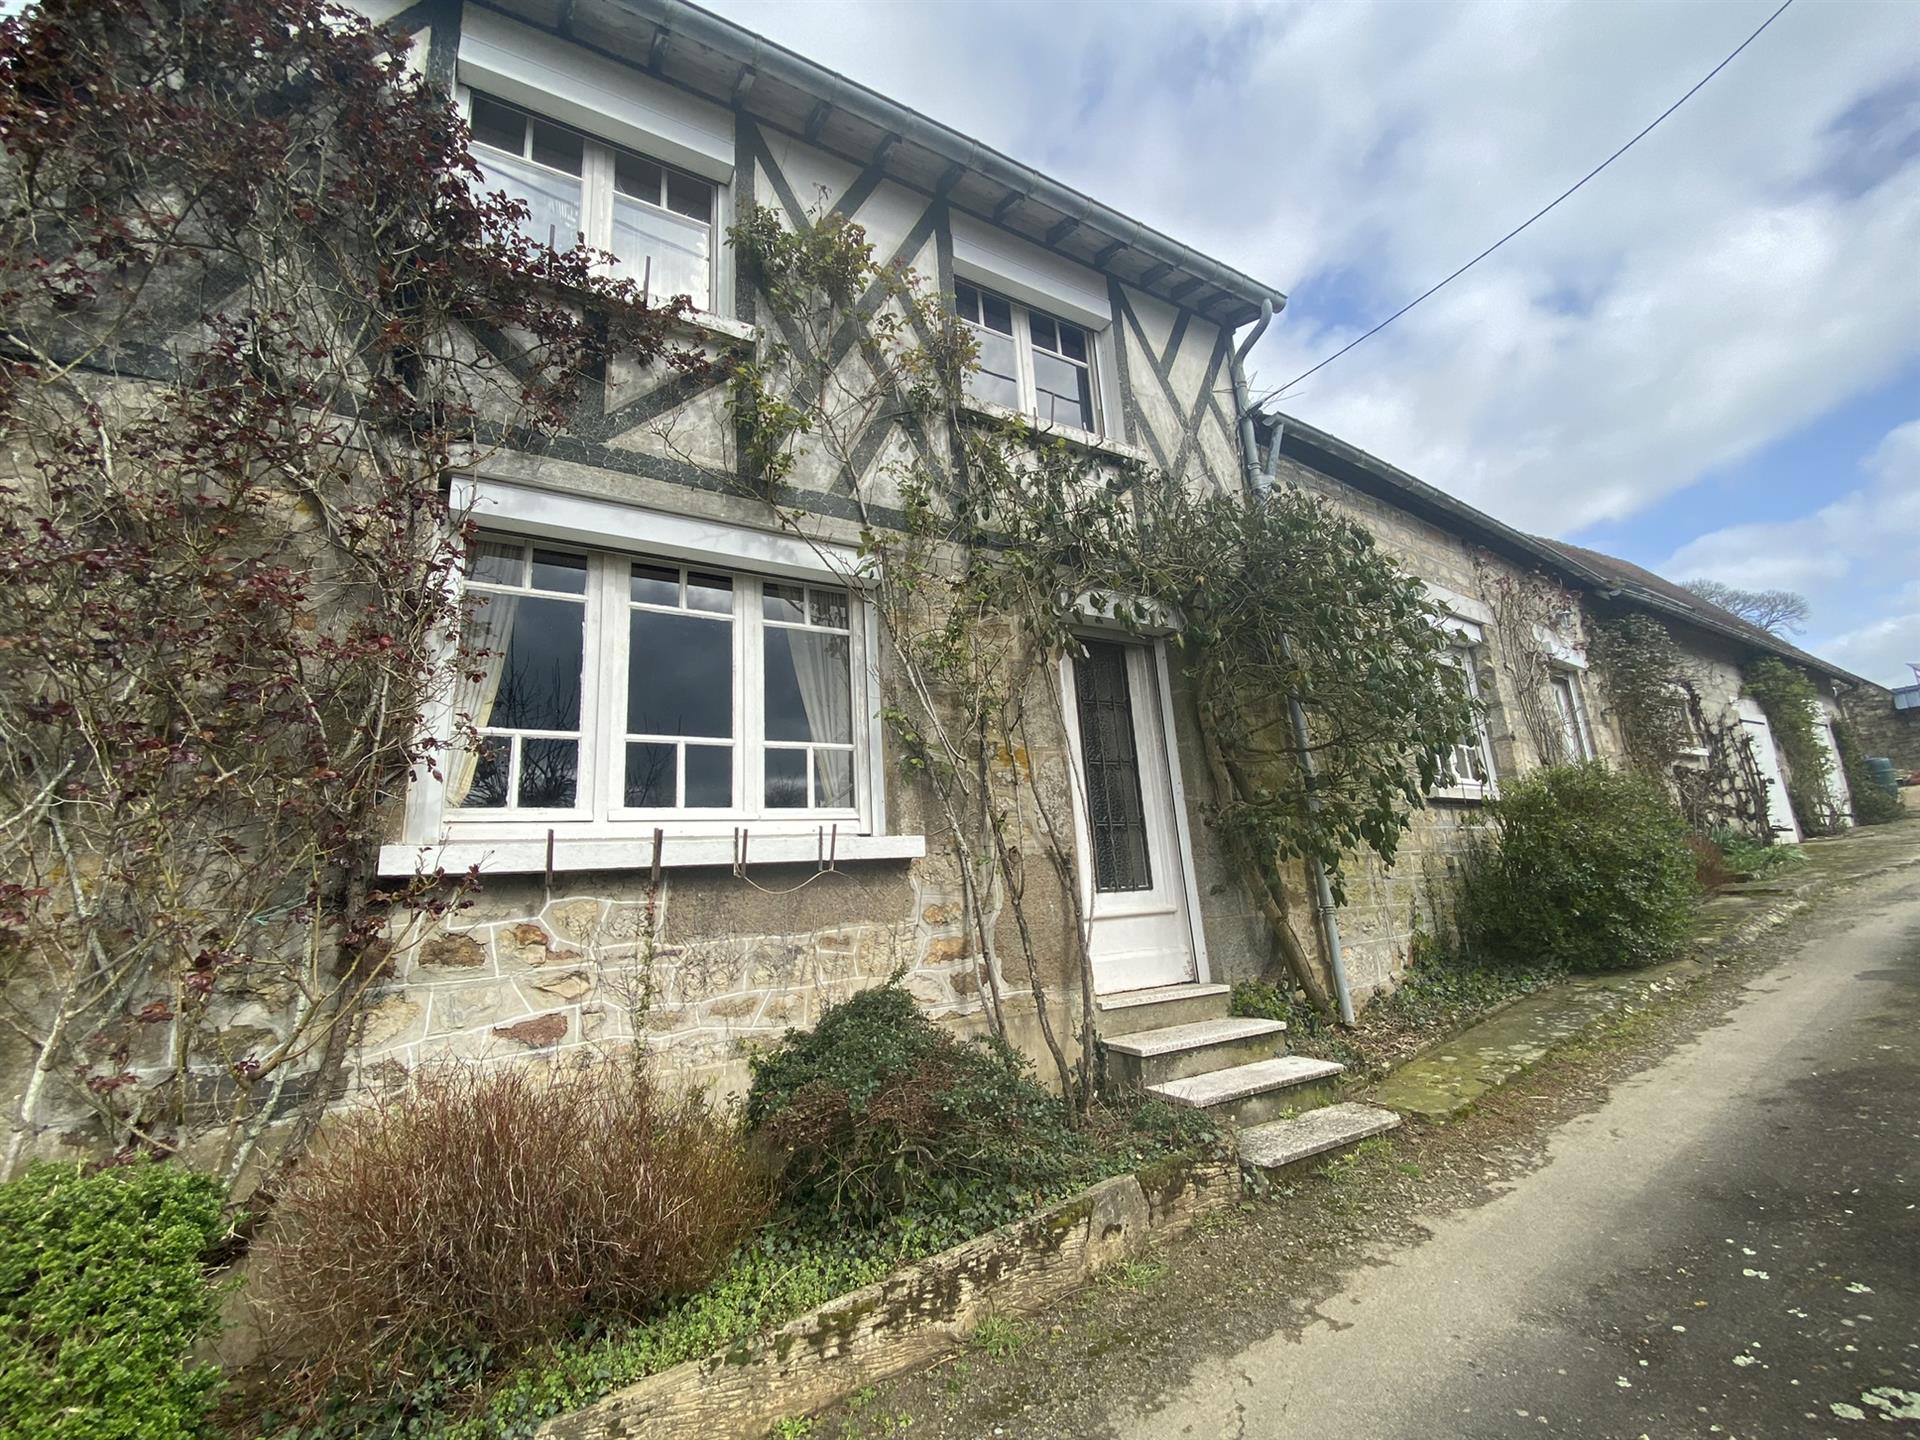 Maison sise à Juvigny-Val-D’Andaine (Orne) (61140), d’environ 96 m² habitable 